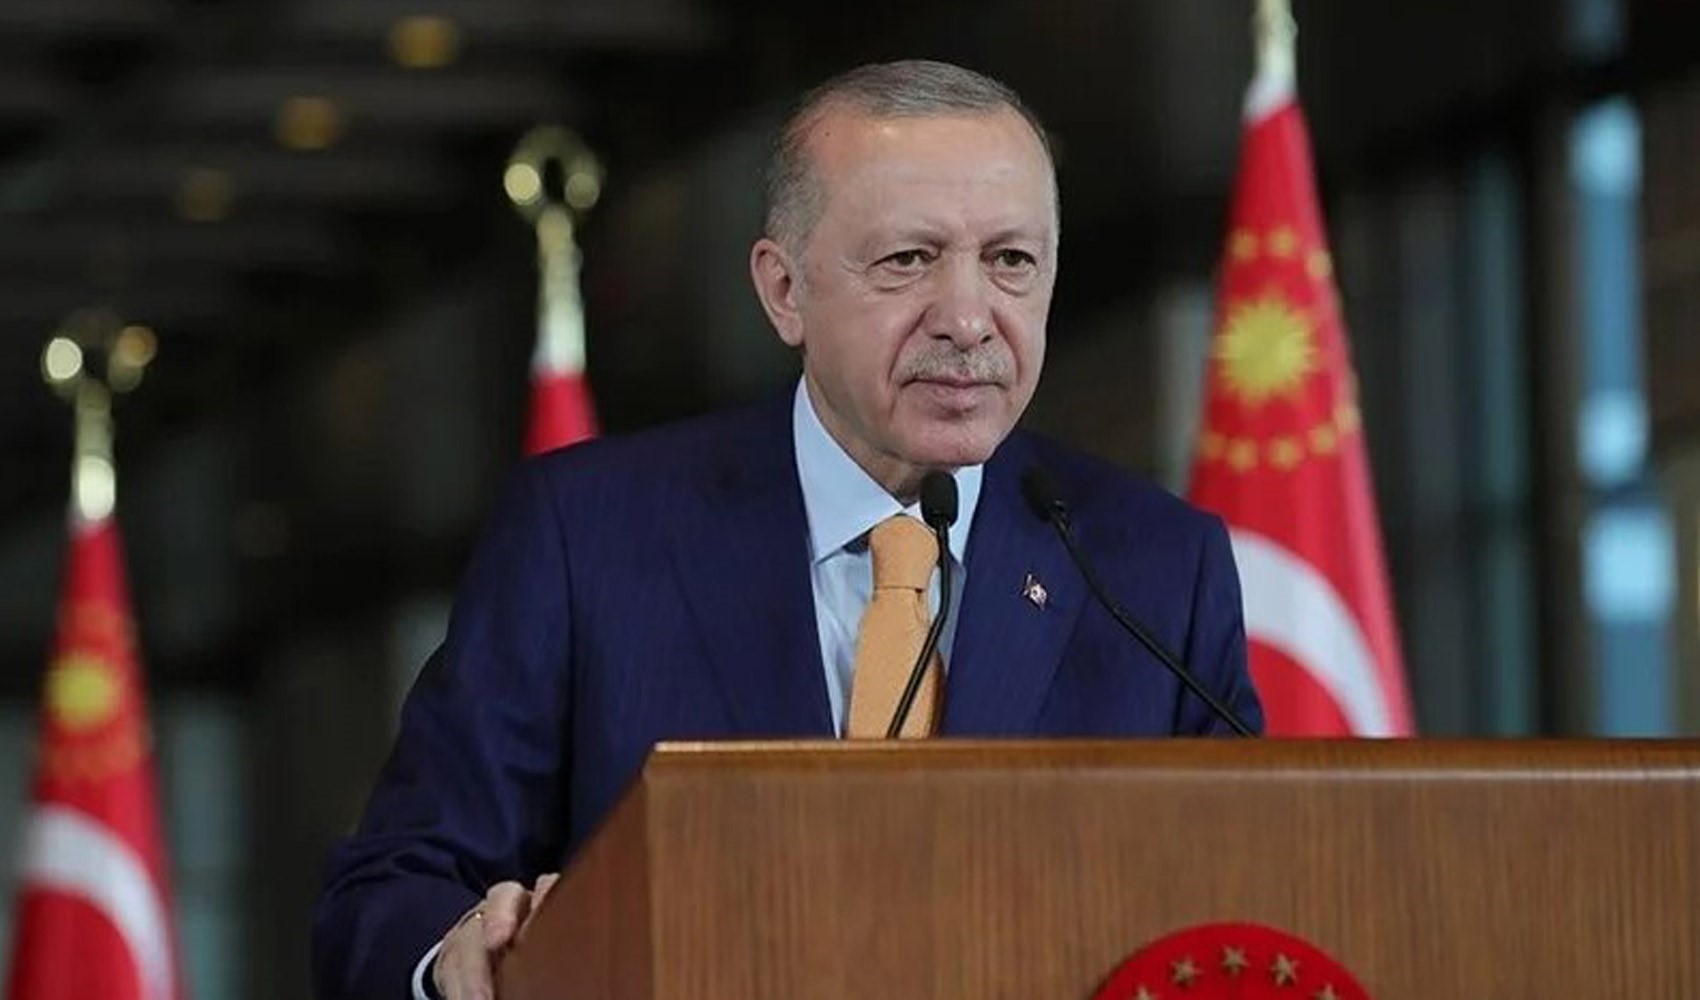 Cumhurbaşkanı Erdoğan, YSK'nın Hatay kararını değerlendirdi